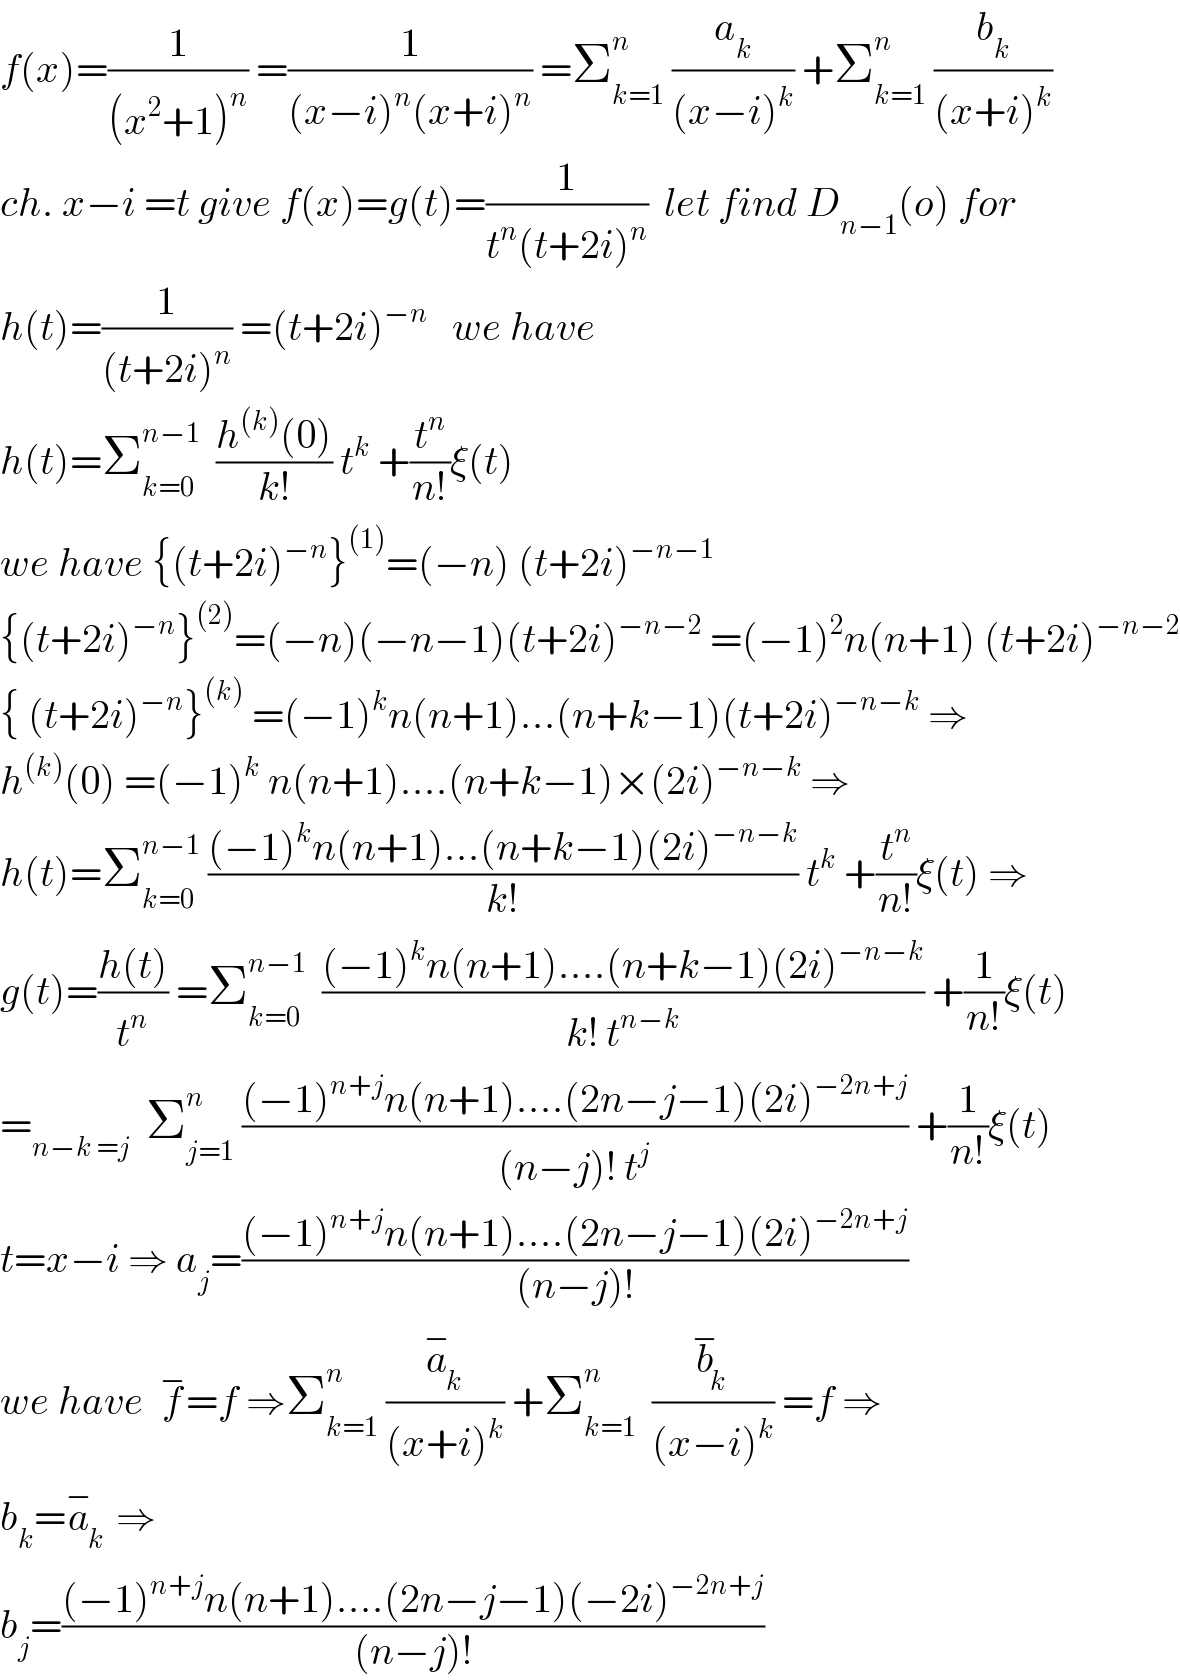 f(x)=(1/((x^2 +1)^n )) =(1/((x−i)^n (x+i)^n )) =Σ_(k=1) ^n  (a_k /((x−i)^k )) +Σ_(k=1) ^n  (b_k /((x+i)^k ))  ch. x−i =t give f(x)=g(t)=(1/(t^n (t+2i)^n ))  let find D_(n−1) (o) for  h(t)=(1/((t+2i)^n )) =(t+2i)^(−n)    we have  h(t)=Σ_(k=0) ^(n−1)   ((h^((k)) (0))/(k!)) t^k  +(t^n /(n!))ξ(t)  we have {(t+2i)^(−n) }^((1)) =(−n) (t+2i)^(−n−1)   {(t+2i)^(−n) }^((2)) =(−n)(−n−1)(t+2i)^(−n−2)  =(−1)^2 n(n+1) (t+2i)^(−n−2)   { (t+2i)^(−n) }^((k))  =(−1)^k n(n+1)...(n+k−1)(t+2i)^(−n−k)  ⇒  h^((k)) (0) =(−1)^k  n(n+1)....(n+k−1)×(2i)^(−n−k)  ⇒  h(t)=Σ_(k=0) ^(n−1)  (((−1)^k n(n+1)...(n+k−1)(2i)^(−n−k) )/(k!)) t^k  +(t^n /(n!))ξ(t) ⇒  g(t)=((h(t))/t^n ) =Σ_(k=0) ^(n−1)   (((−1)^k n(n+1)....(n+k−1)(2i)^(−n−k) )/(k! t^(n−k) )) +(1/(n!))ξ(t)  =_(n−k =j)   Σ_(j=1) ^n  (((−1)^(n+j) n(n+1)....(2n−j−1)(2i)^(−2n+j) )/((n−j)! t^j )) +(1/(n!))ξ(t)  t=x−i ⇒ a_j =(((−1)^(n+j) n(n+1)....(2n−j−1)(2i)^(−2n+j) )/((n−j)!))  we have  f^− =f ⇒Σ_(k=1) ^n  (a_k ^− /((x+i)^k )) +Σ_(k=1) ^n   (b_k ^− /((x−i)^k )) =f ⇒  b_k =a_k ^−  ⇒  b_j =(((−1)^(n+j) n(n+1)....(2n−j−1)(−2i)^(−2n+j) )/((n−j)!))  